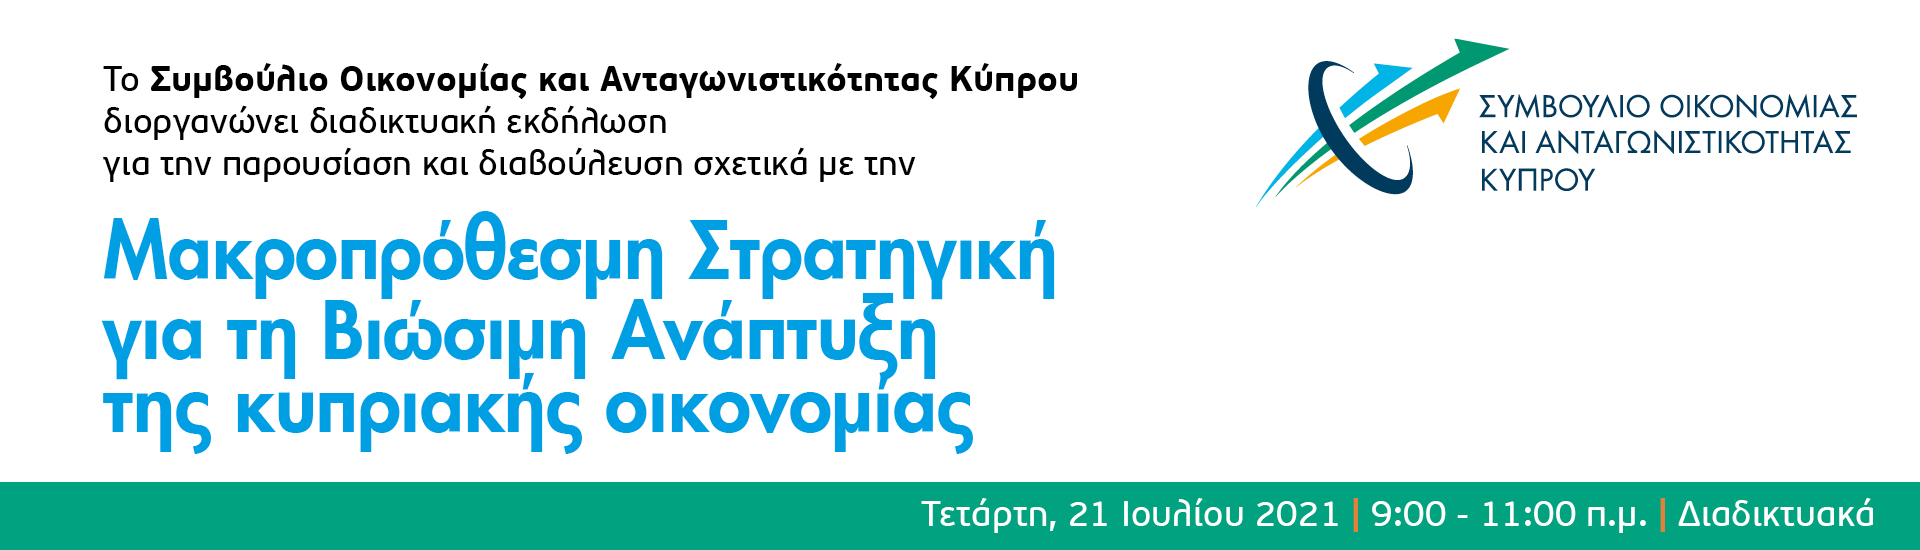 Συμβούλιο Οικονομίας και Ανταγωνιστικότητας Κύπρου, IMH